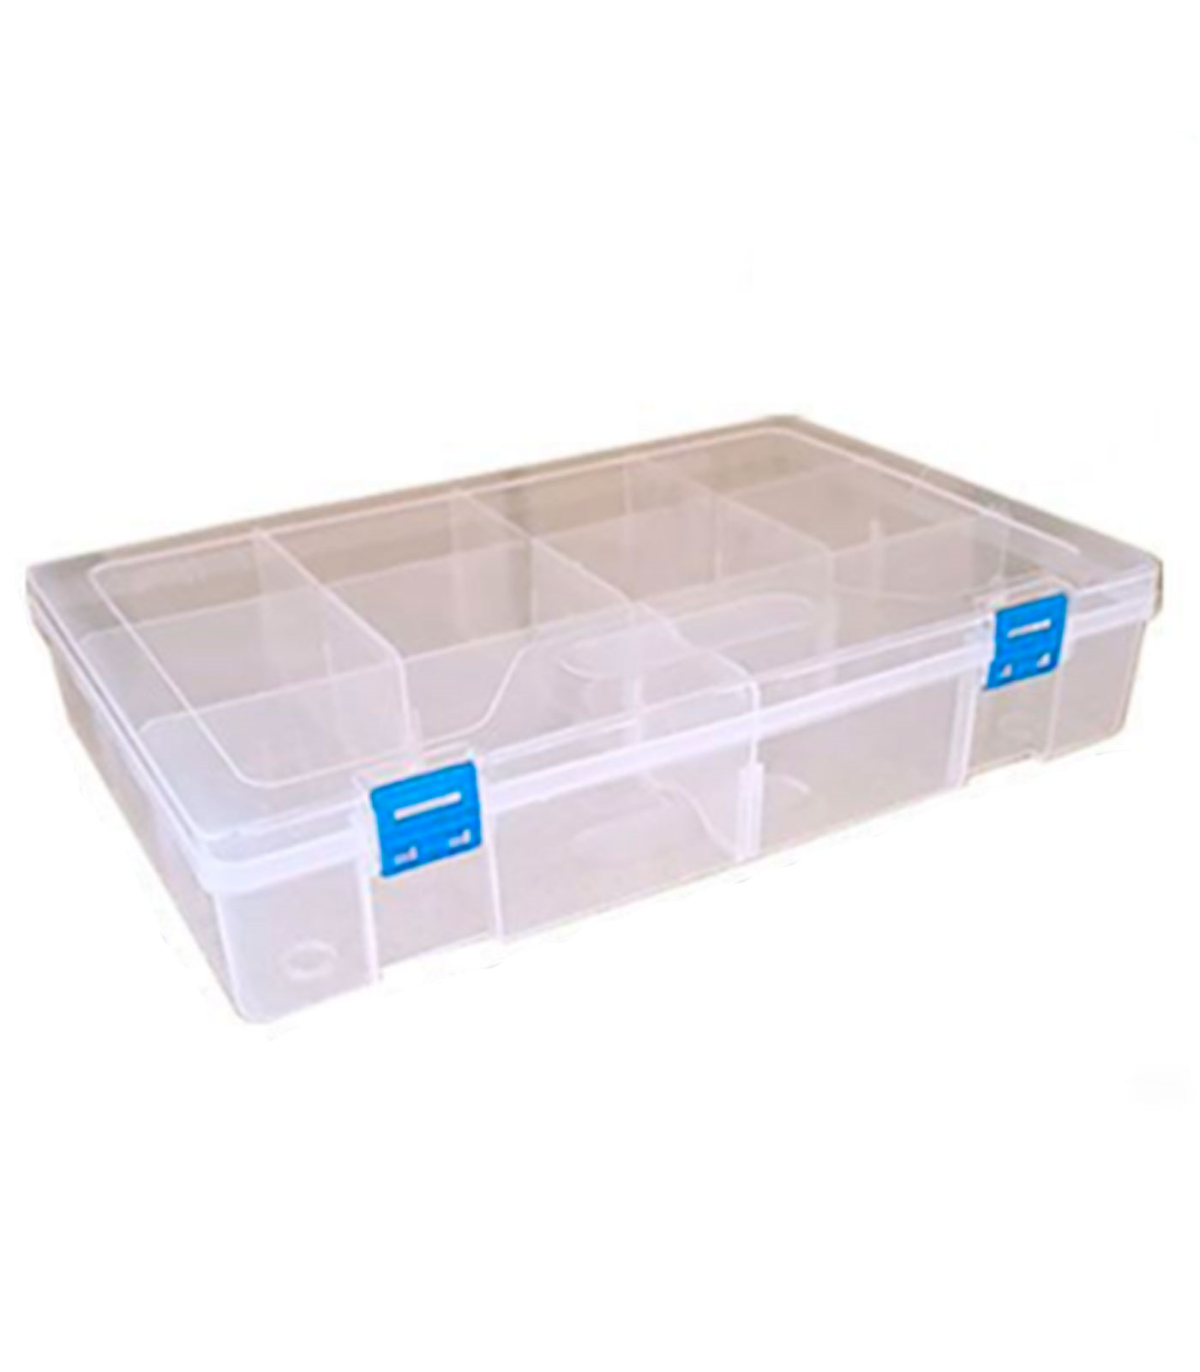 Tradineur - Caja organizadora multiusos con separadores, 10 compartimentos,  plástico, almacenaje de tornillos, tuercas, accesori